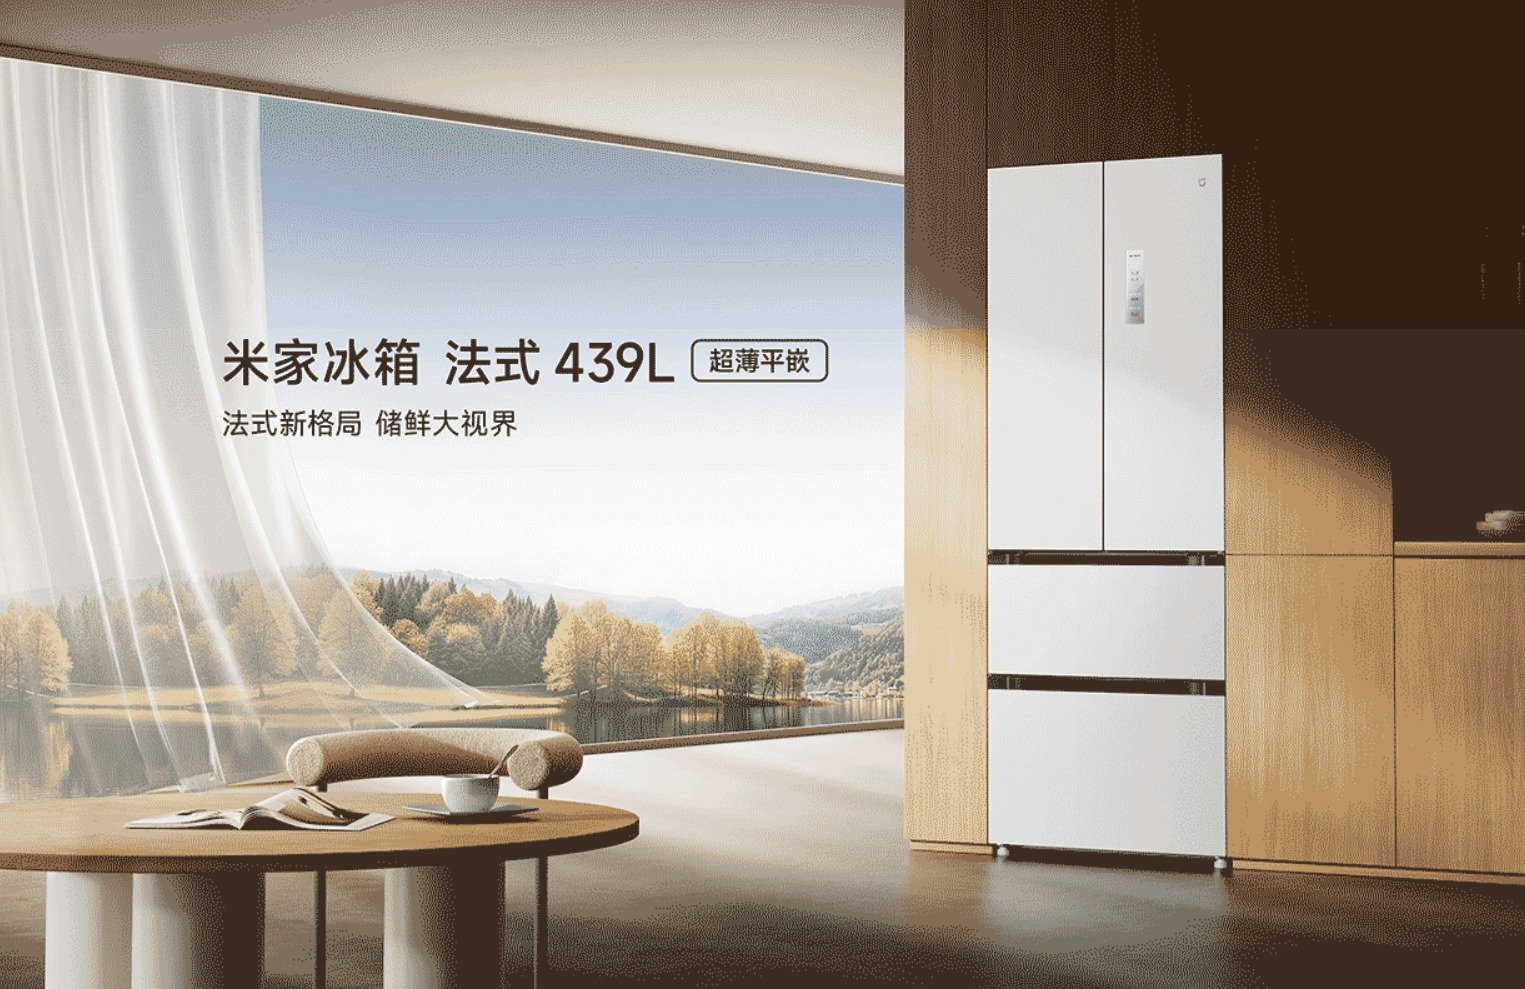 Geladeira 439L de estilo francês Xiaomi Mijia lançada na China